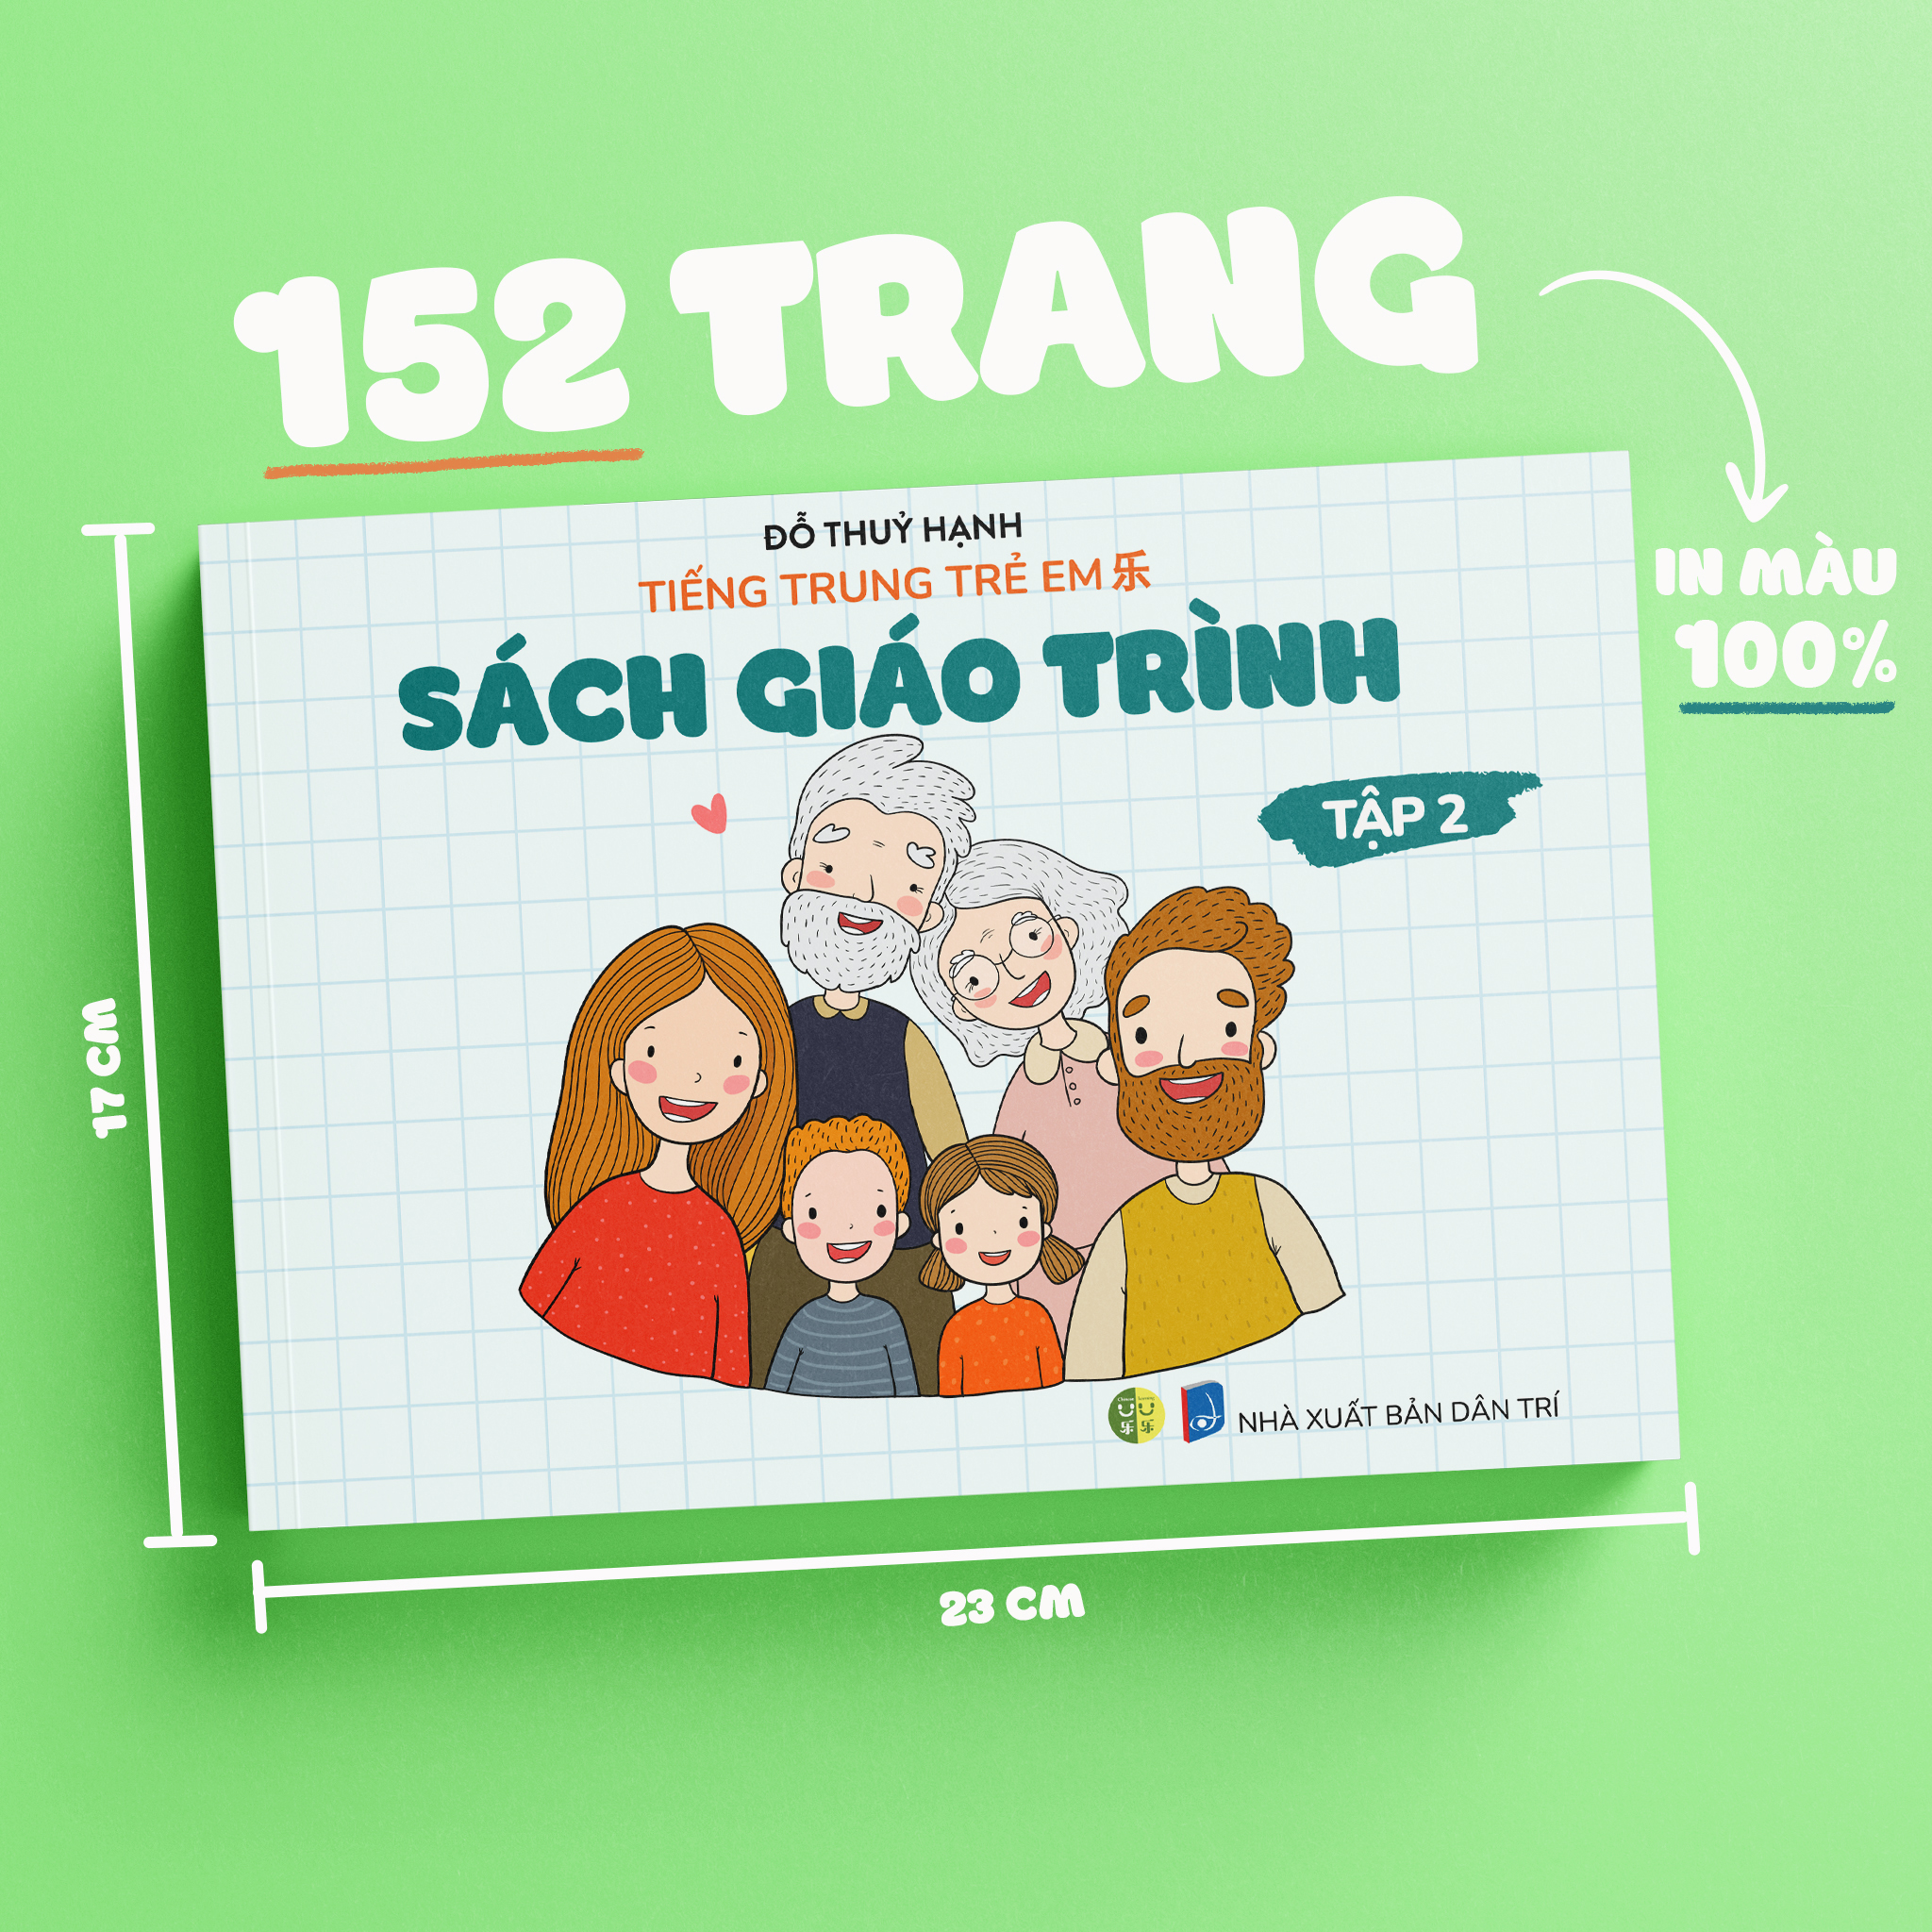 Combo 8 cuốn sách: Tiếng Trung trẻ em 乐 tập 1 + 2 - Tặng trò chơi giáo dục trực tuyến, Tặng khoá phát âm chuẩn tiếng Trung